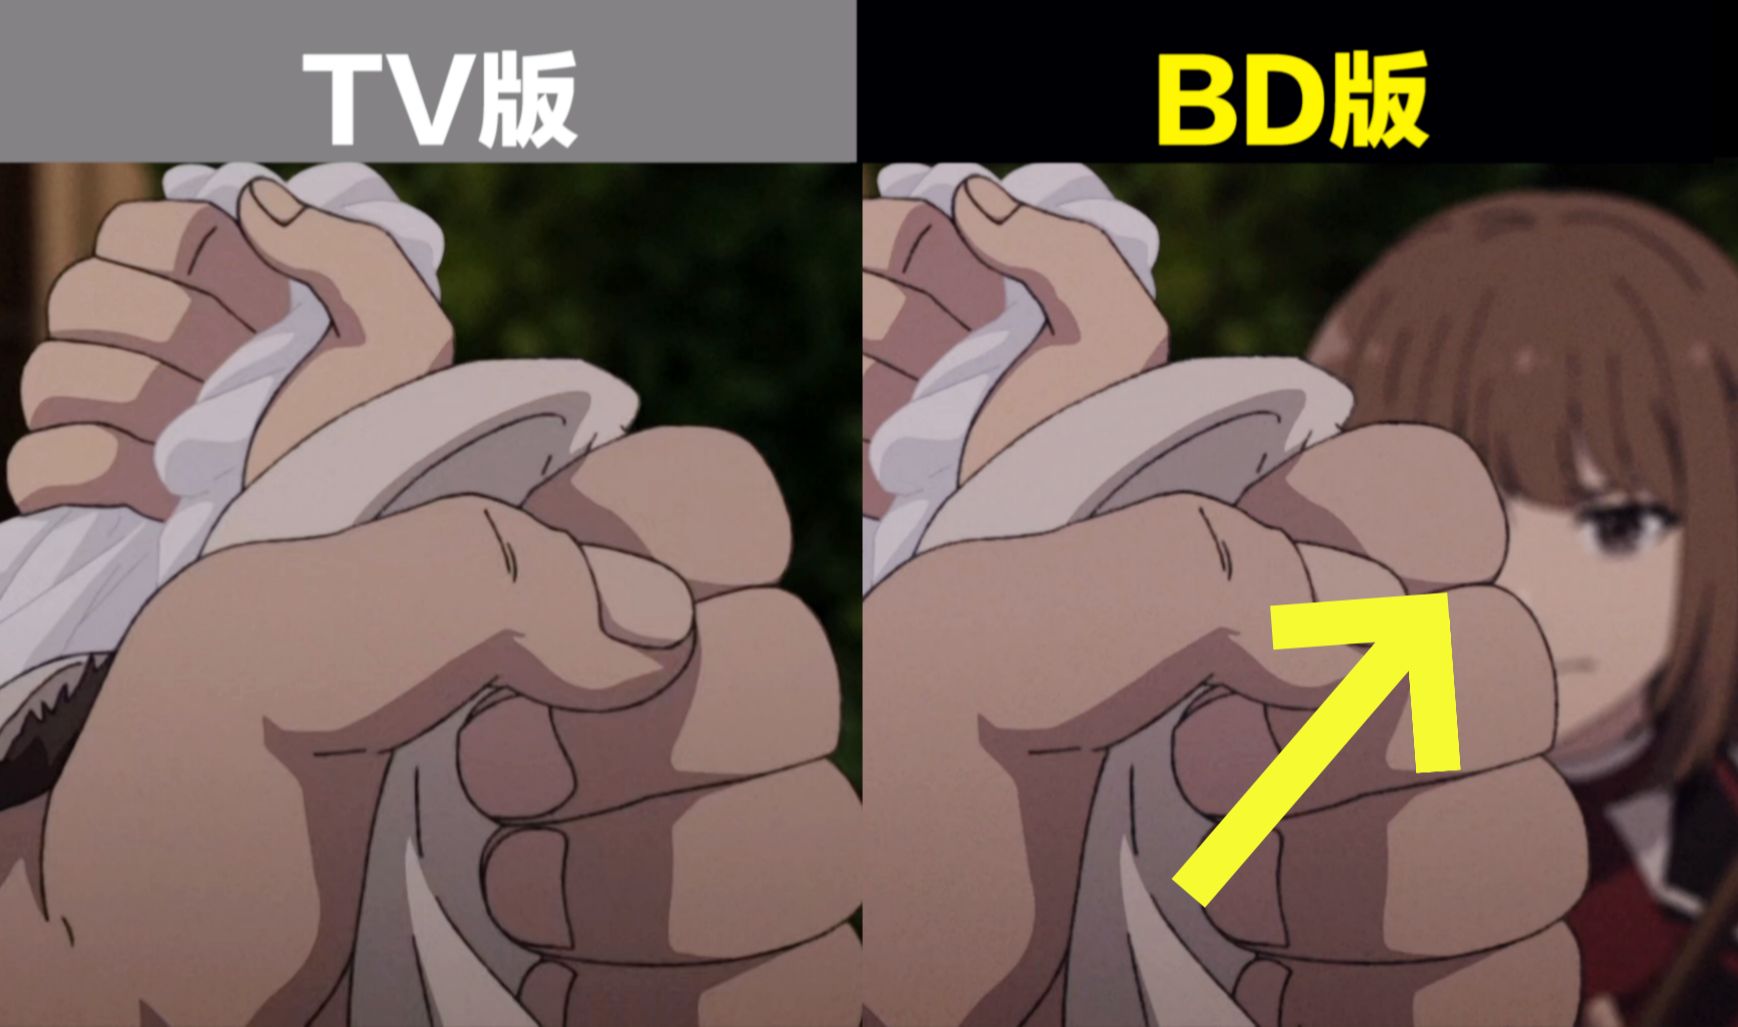 【BD对比】无职转生S2 第4-5话 BD版 vs TV版 作画修正对比！